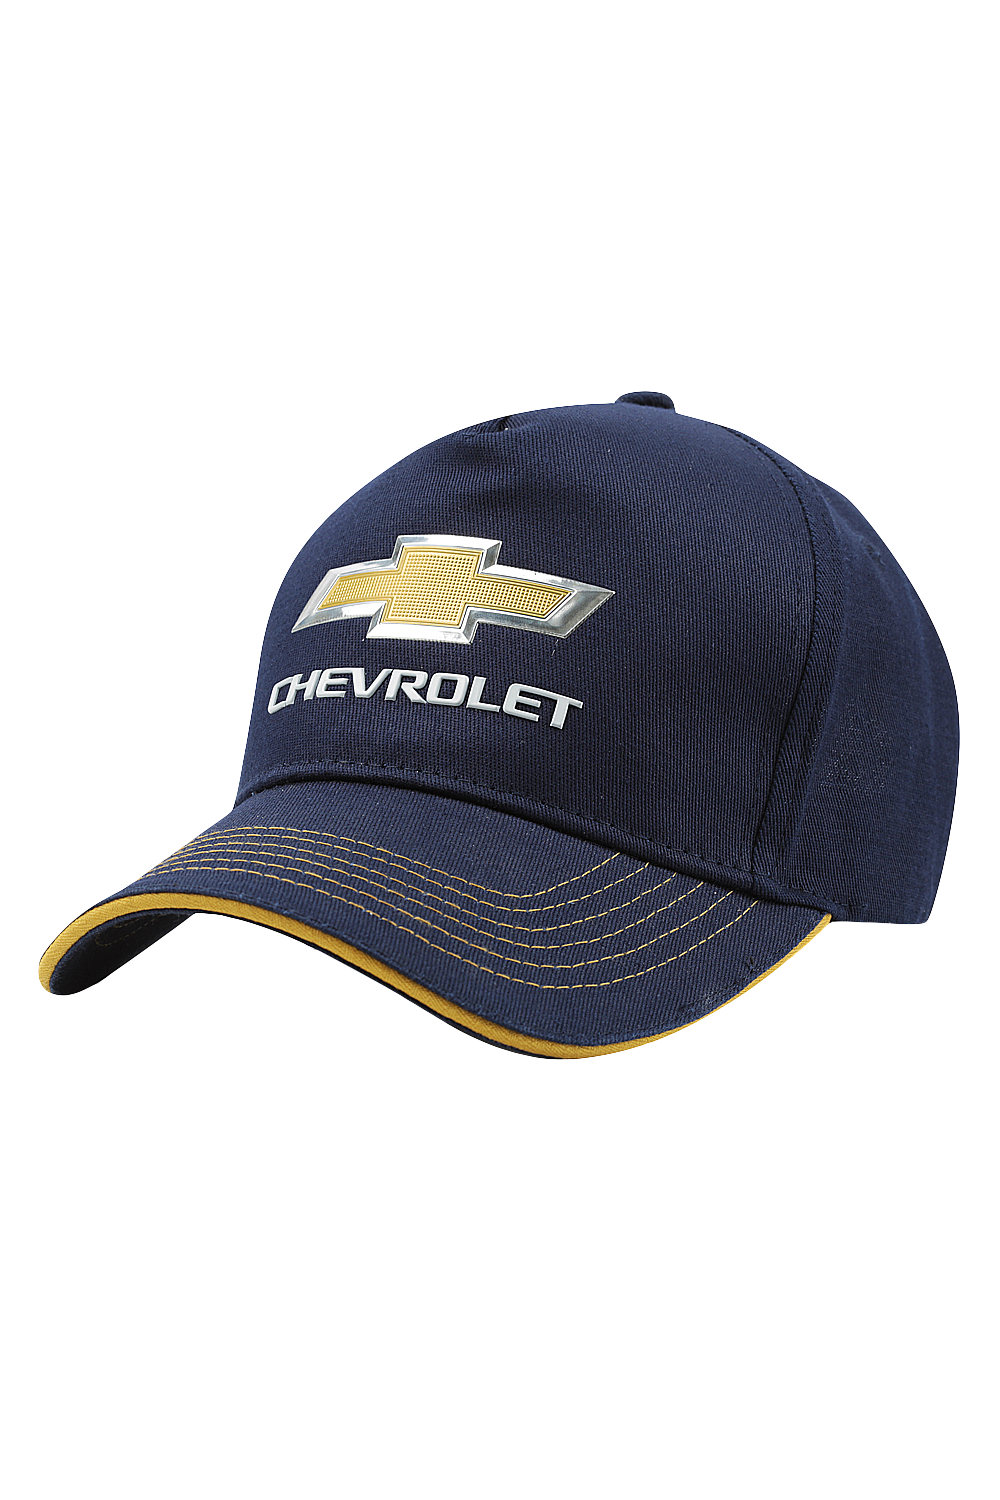 Chevrolet Cotton Blend 3D Chevy Cap Navy